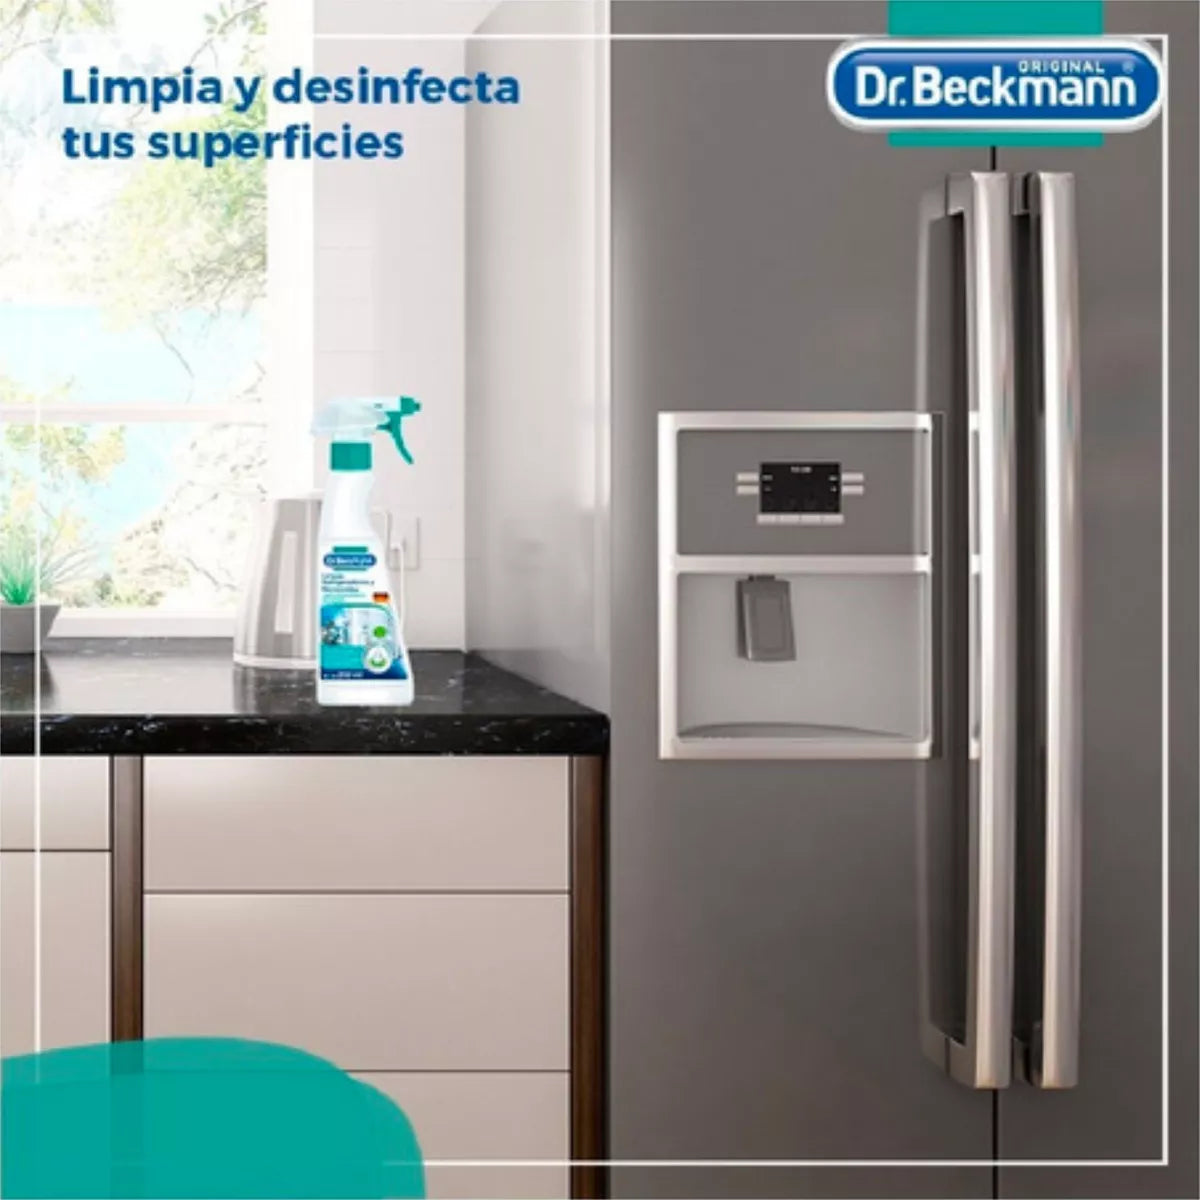 Limpia Refrigeradores Y Microondas 250ml Dr.Beckmann